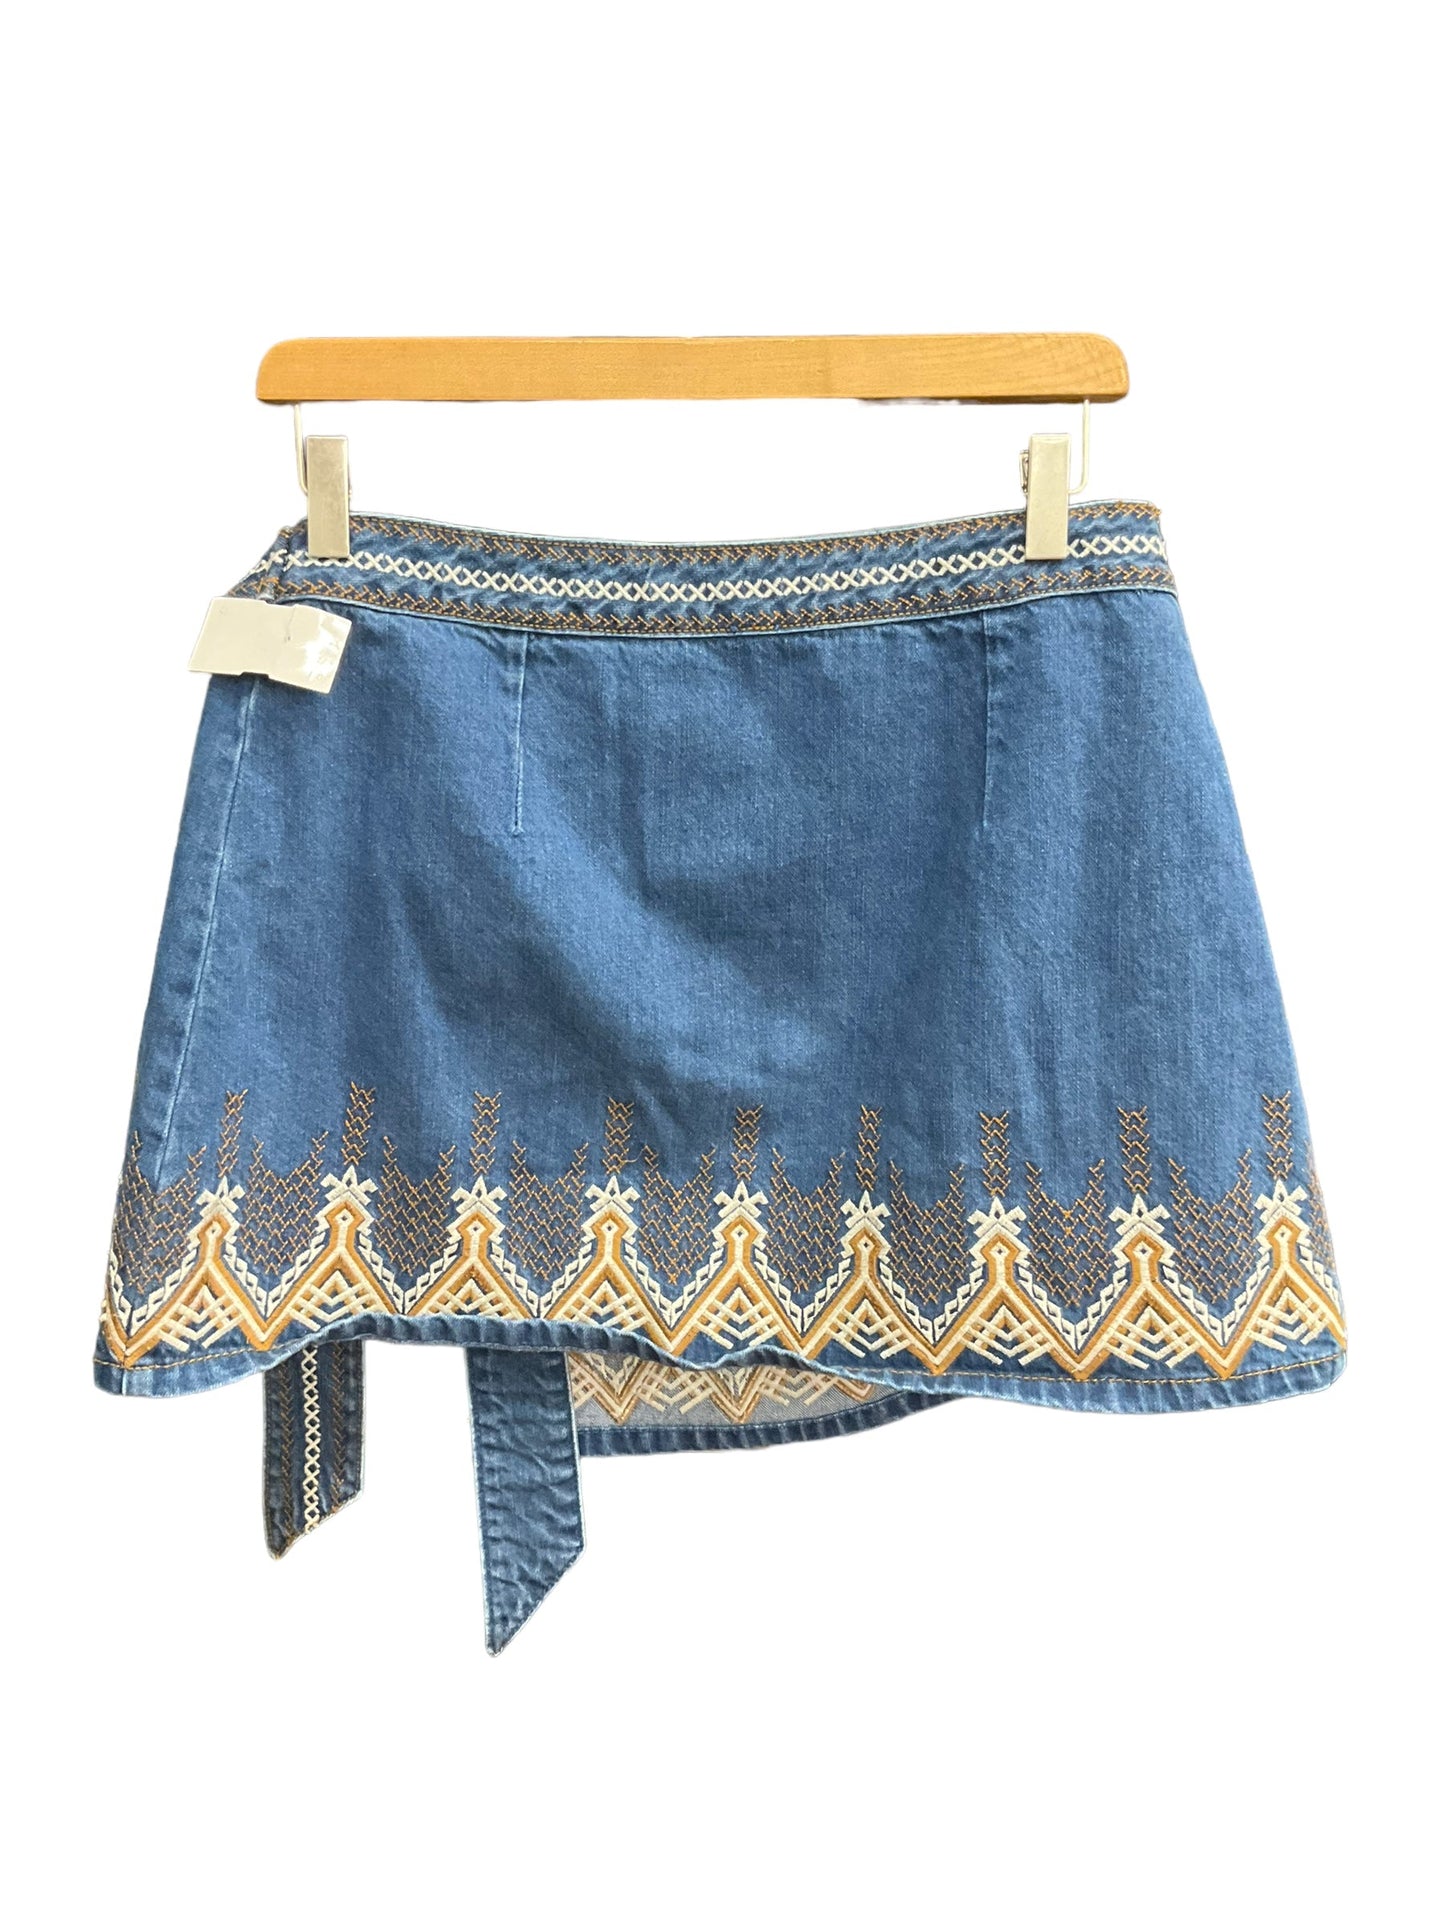 Blue Denim Skirt Mini & Short Free People, Size 8